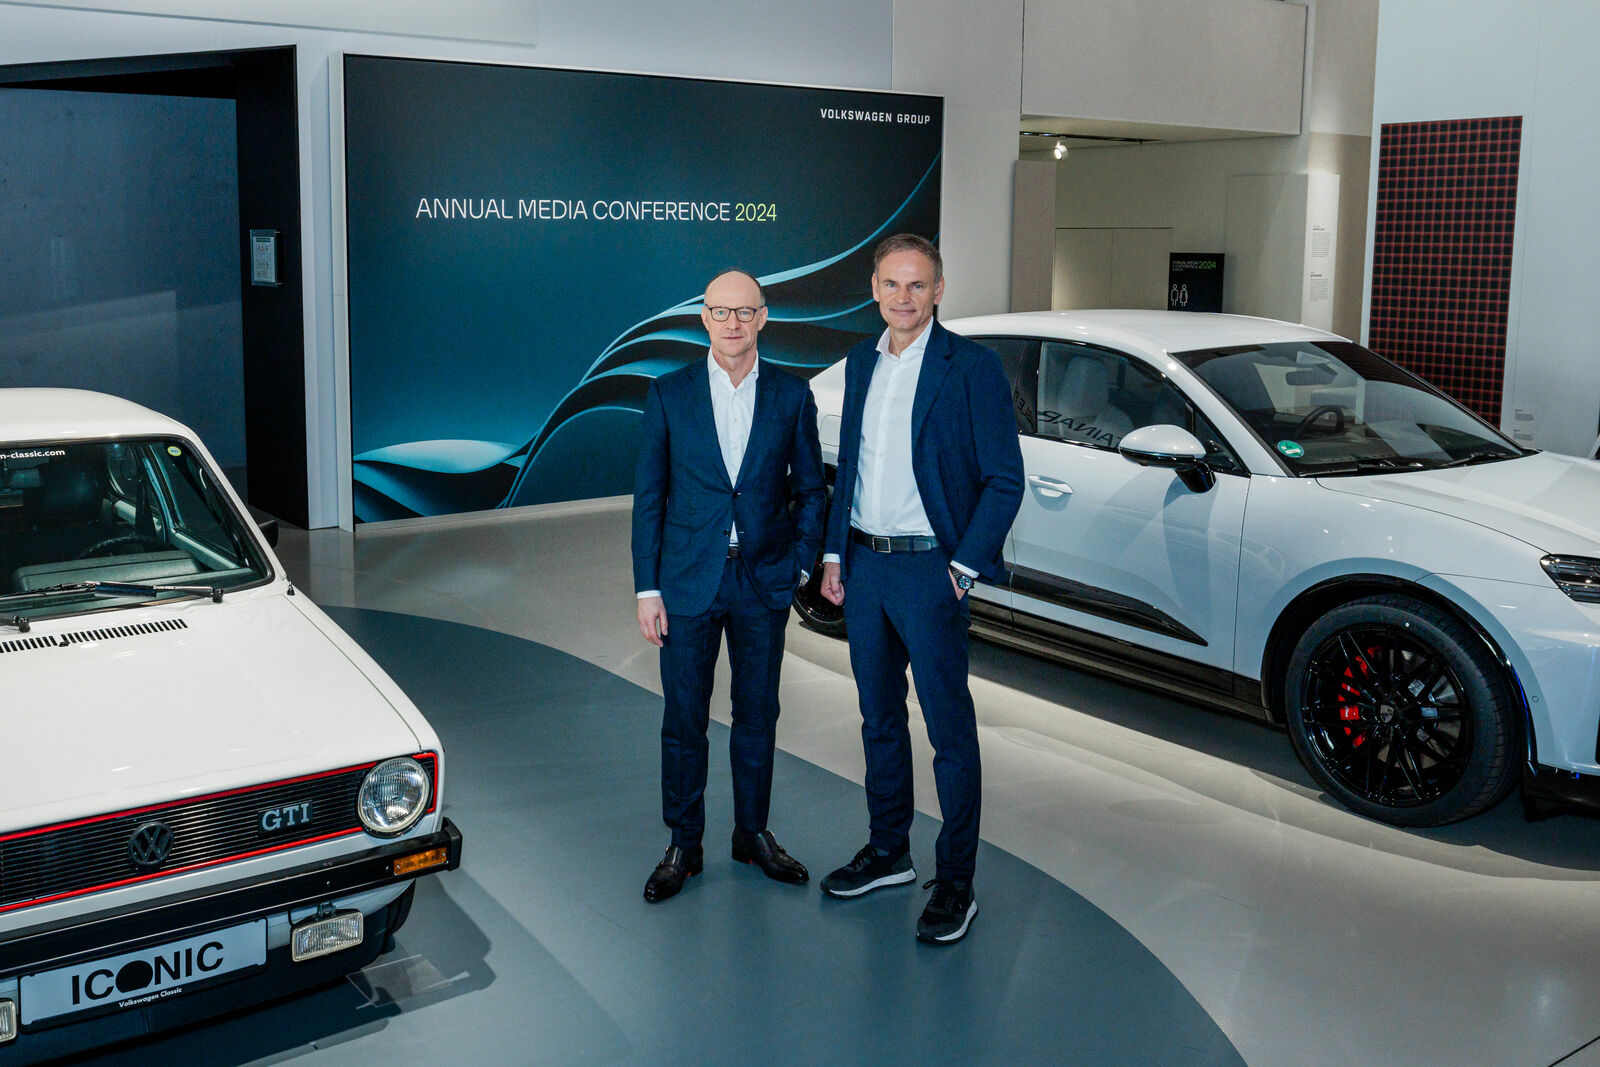 Zwei Männer in Geschäftskleidung stehen neben einem klassischen und einem modernen Volkswagen-Auto bei einer Pressekonferenz.